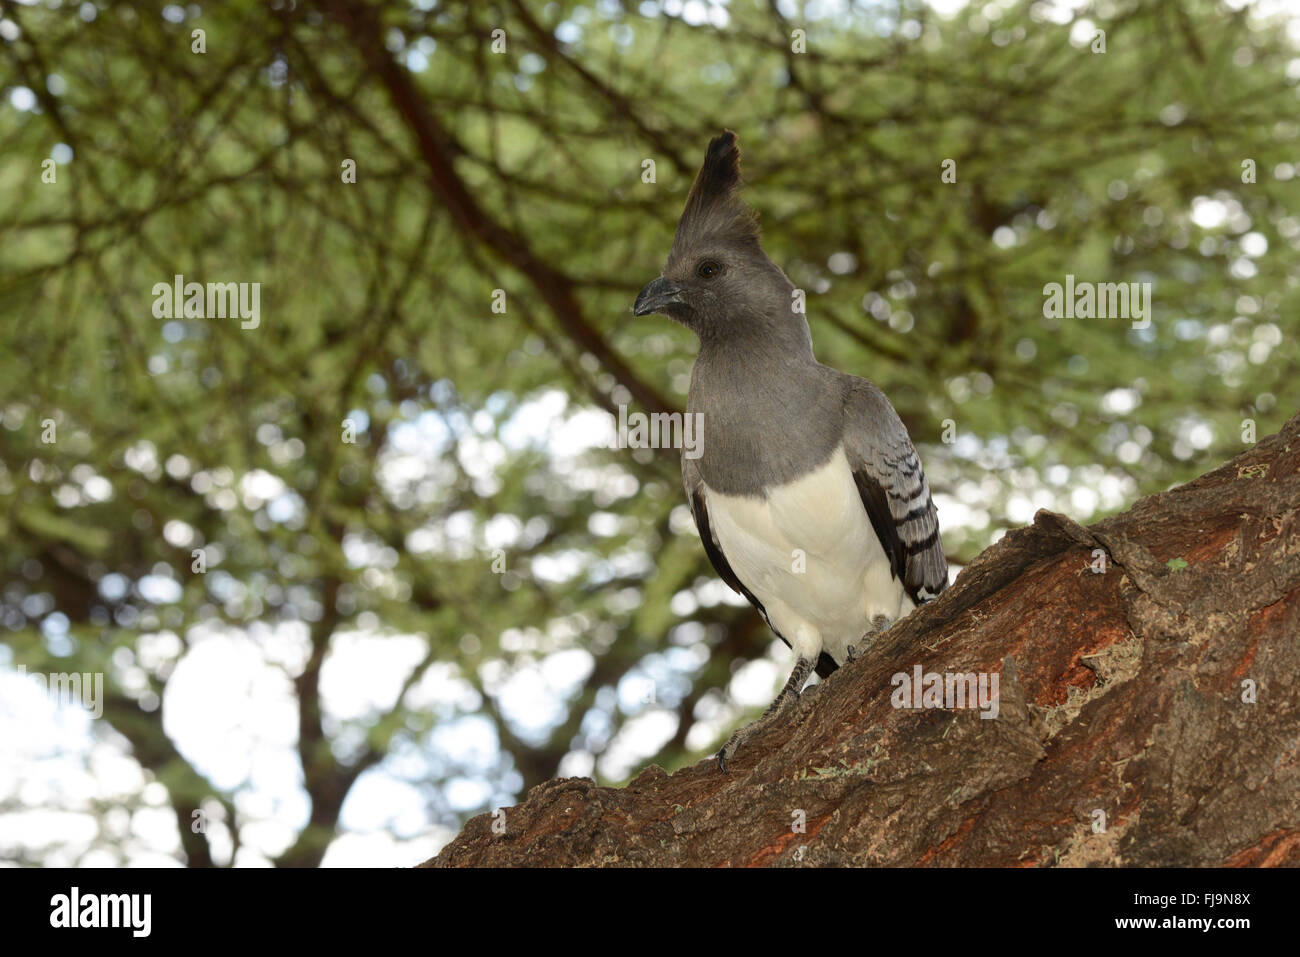 Bianco-panciuto andare lontano Bird (Criniferoides leucogaster) adulto appollaiato sul tronco di albero, Shaba riserva nazionale, Kenya, Ottobre Foto Stock